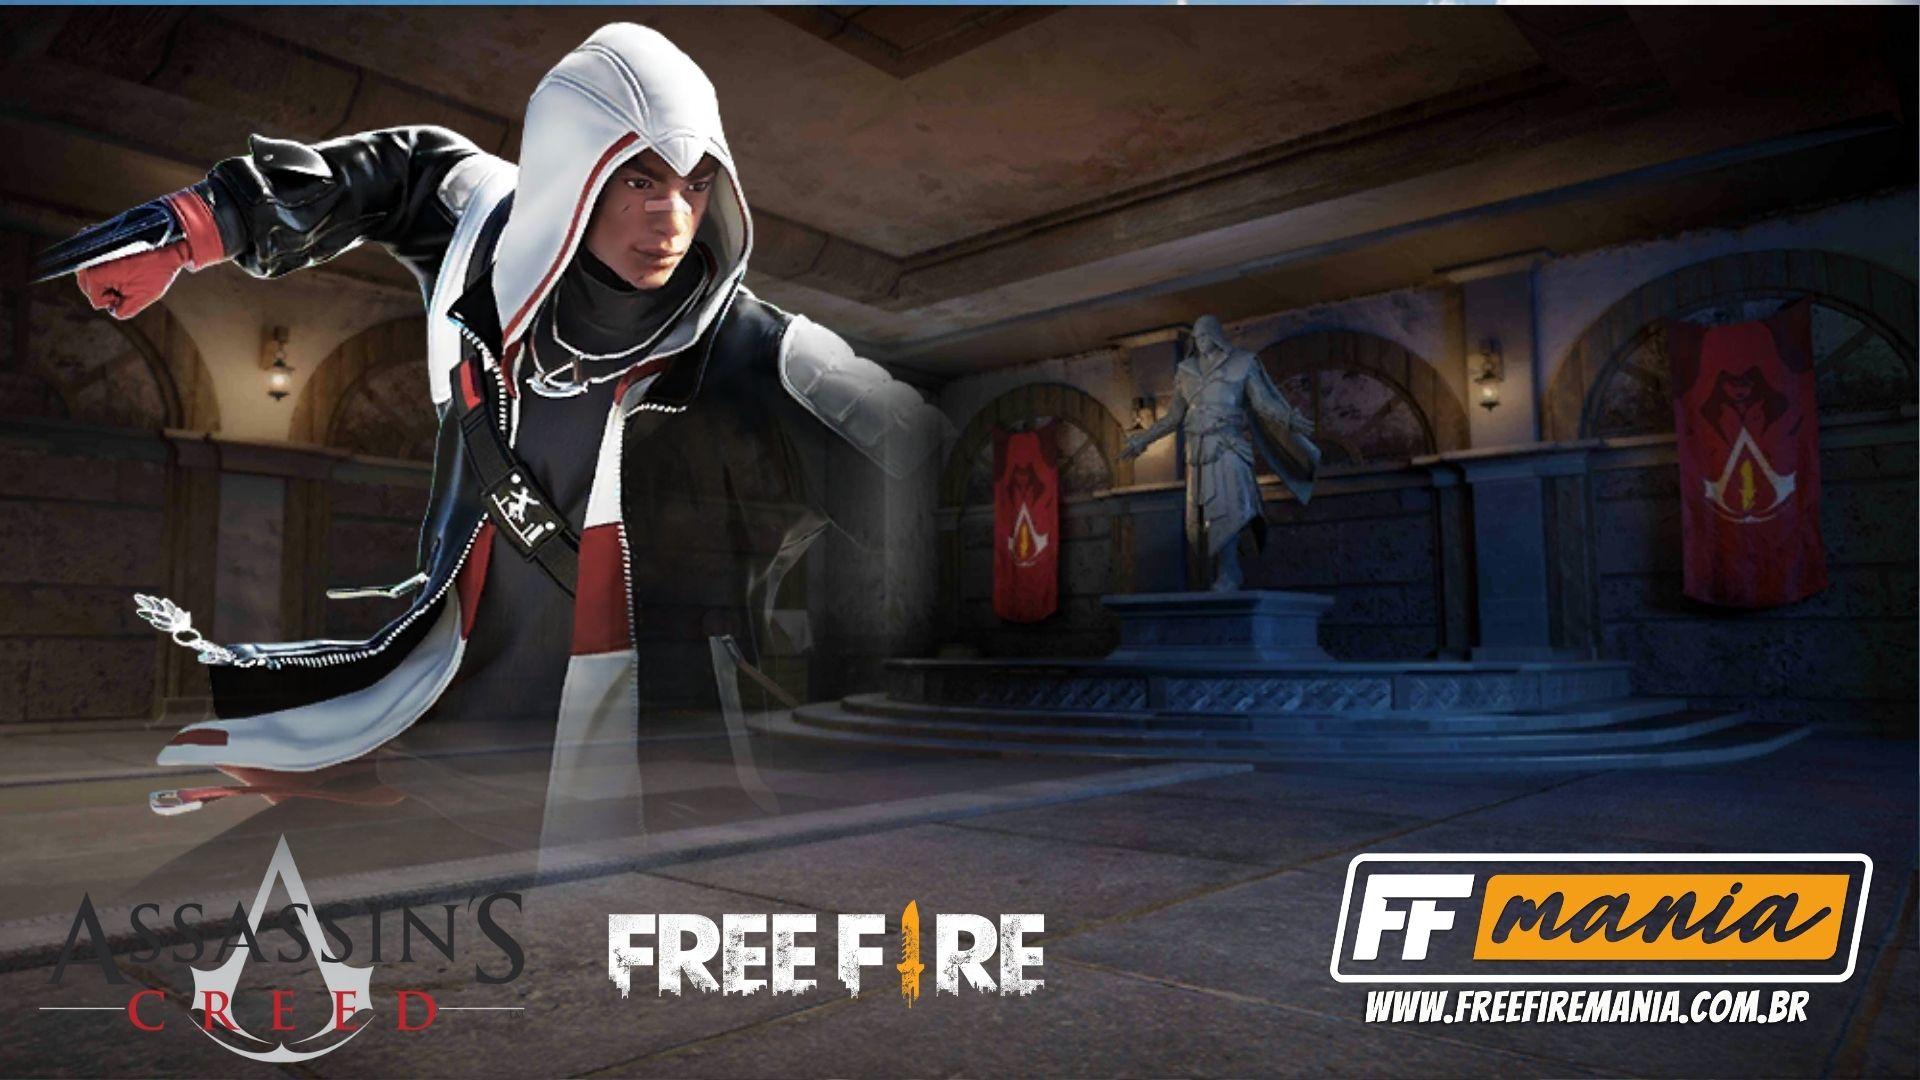 Associação de Free Fire e Assassin's Creed